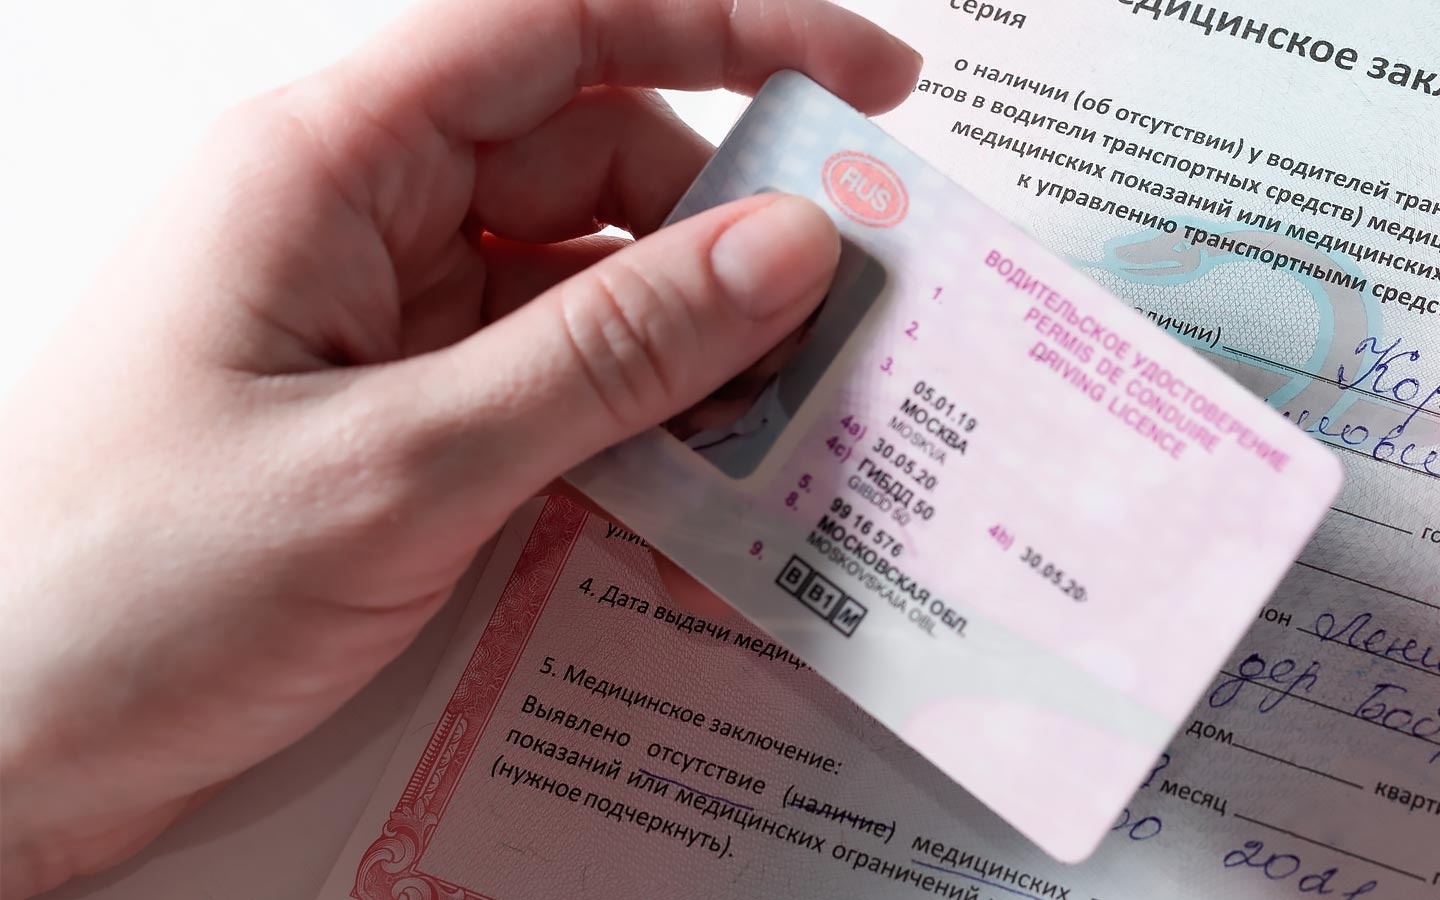 Vodeitelskaya udostovereniya. Новый закон о правах водительских 2024 года